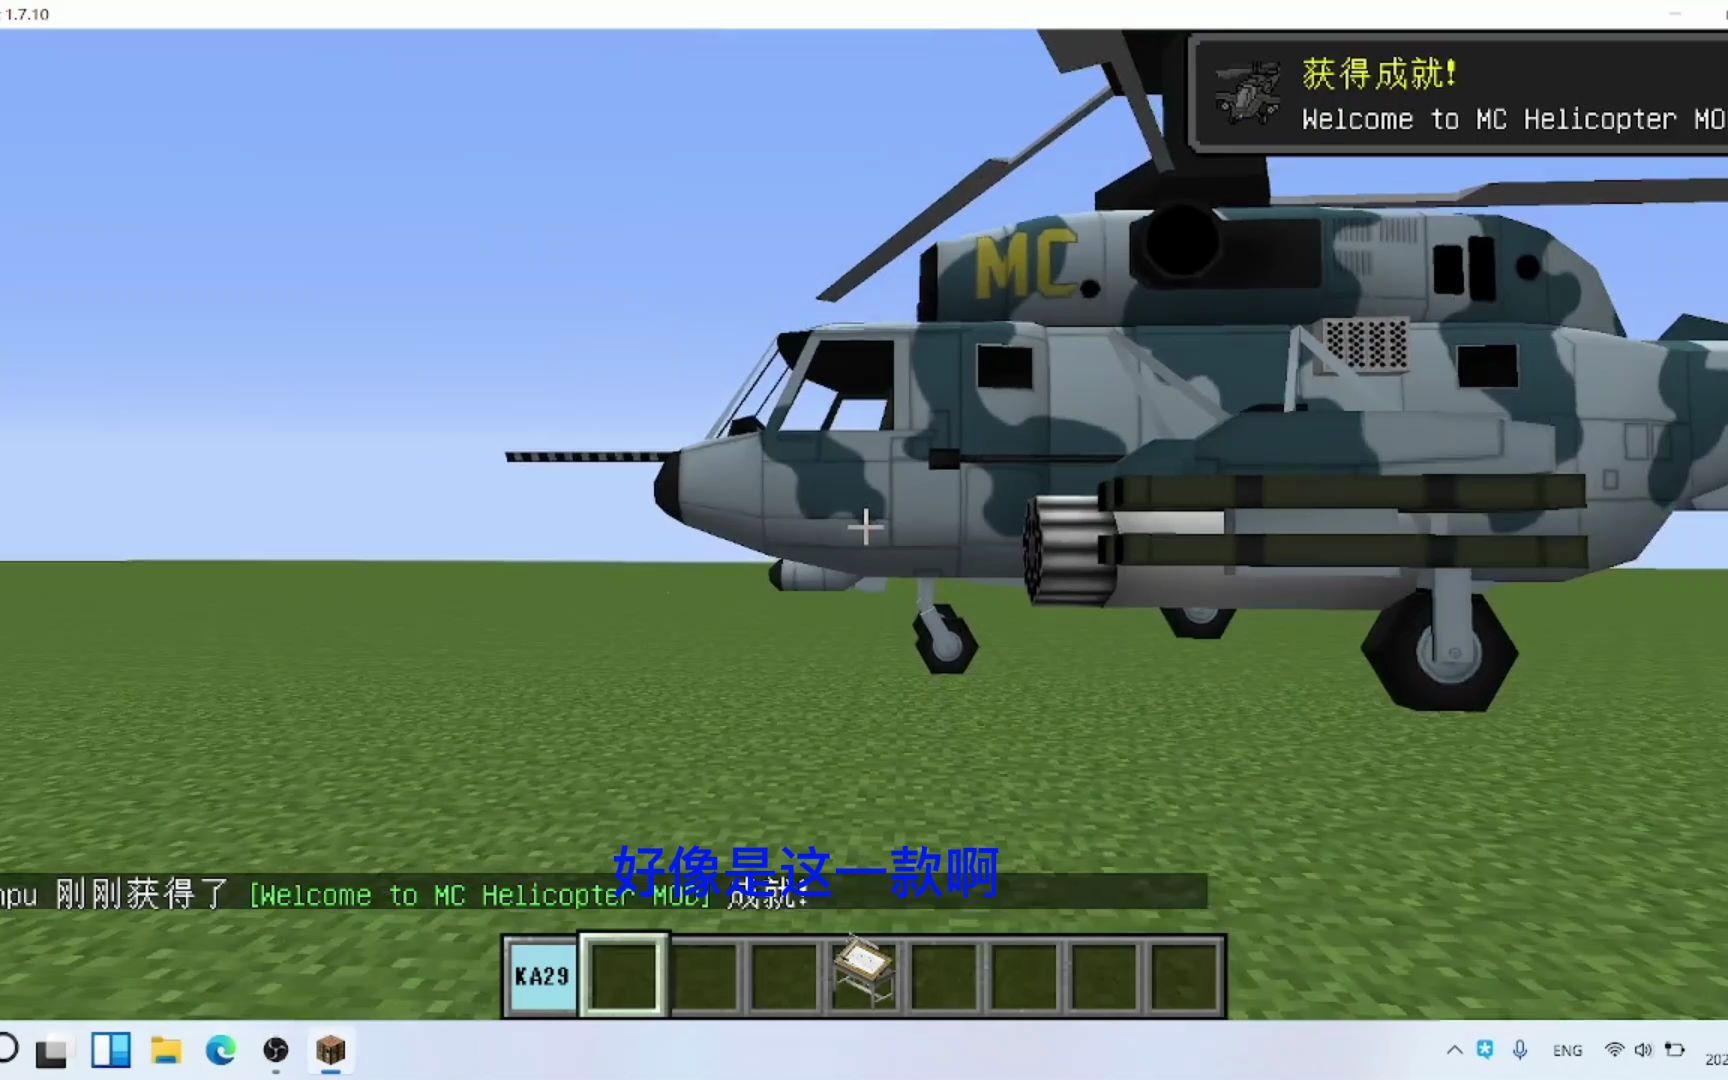 我的世界系列:mod介绍第一集,mc直升飞机